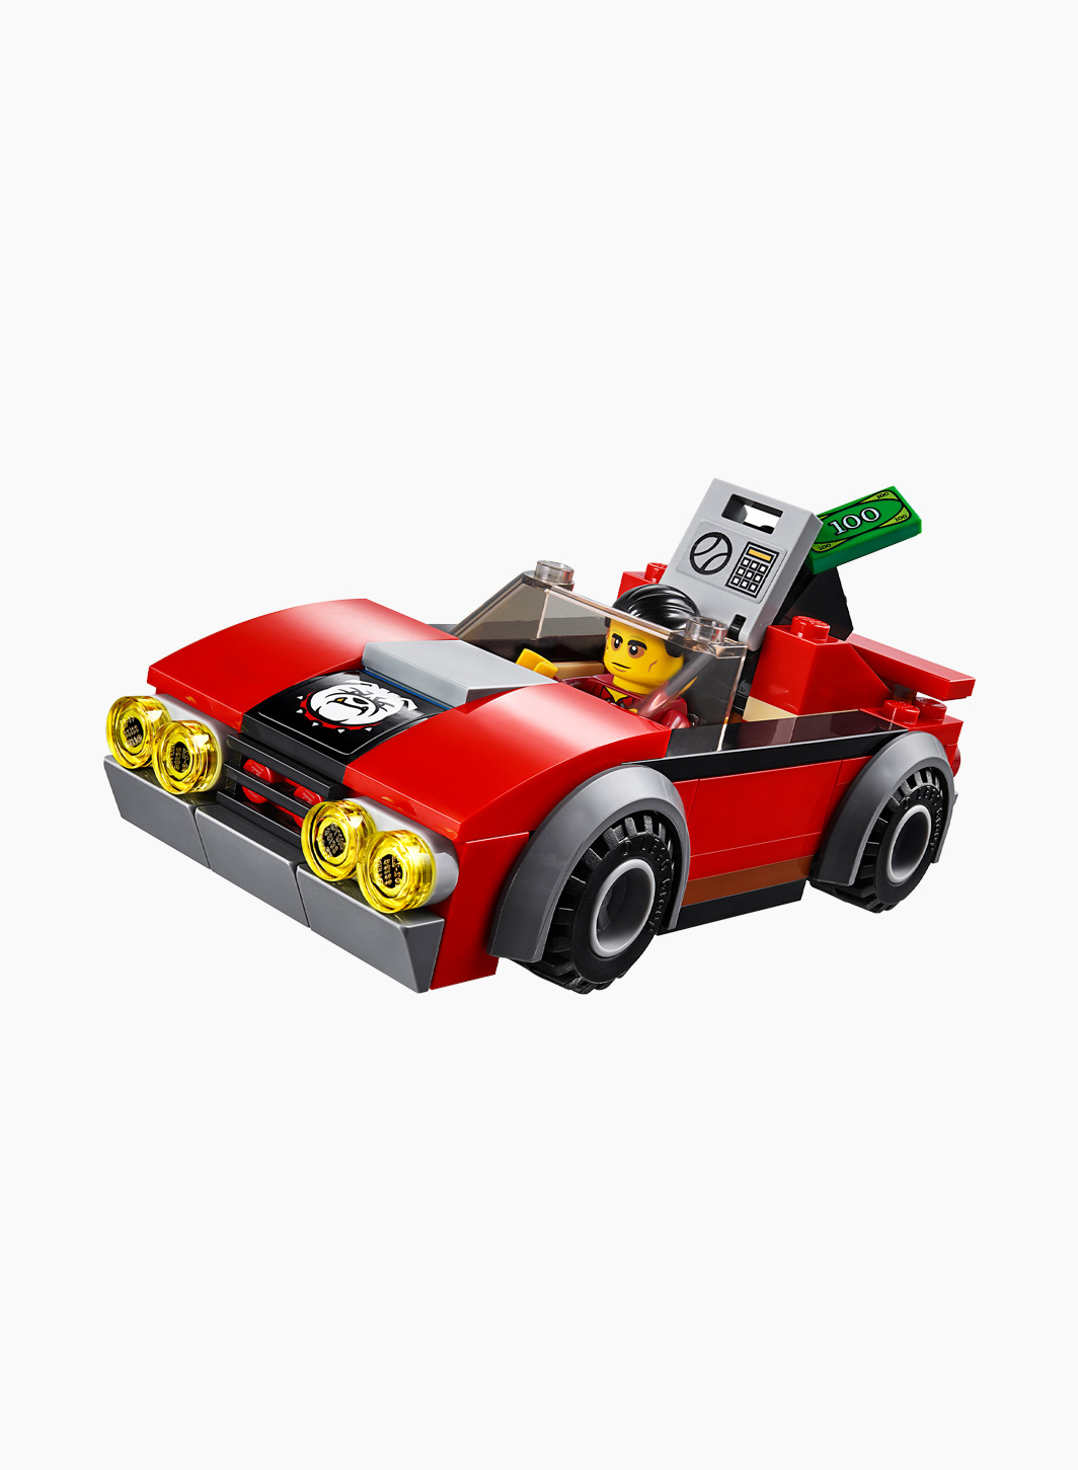 Lego City Конструктор Арест на шоссе